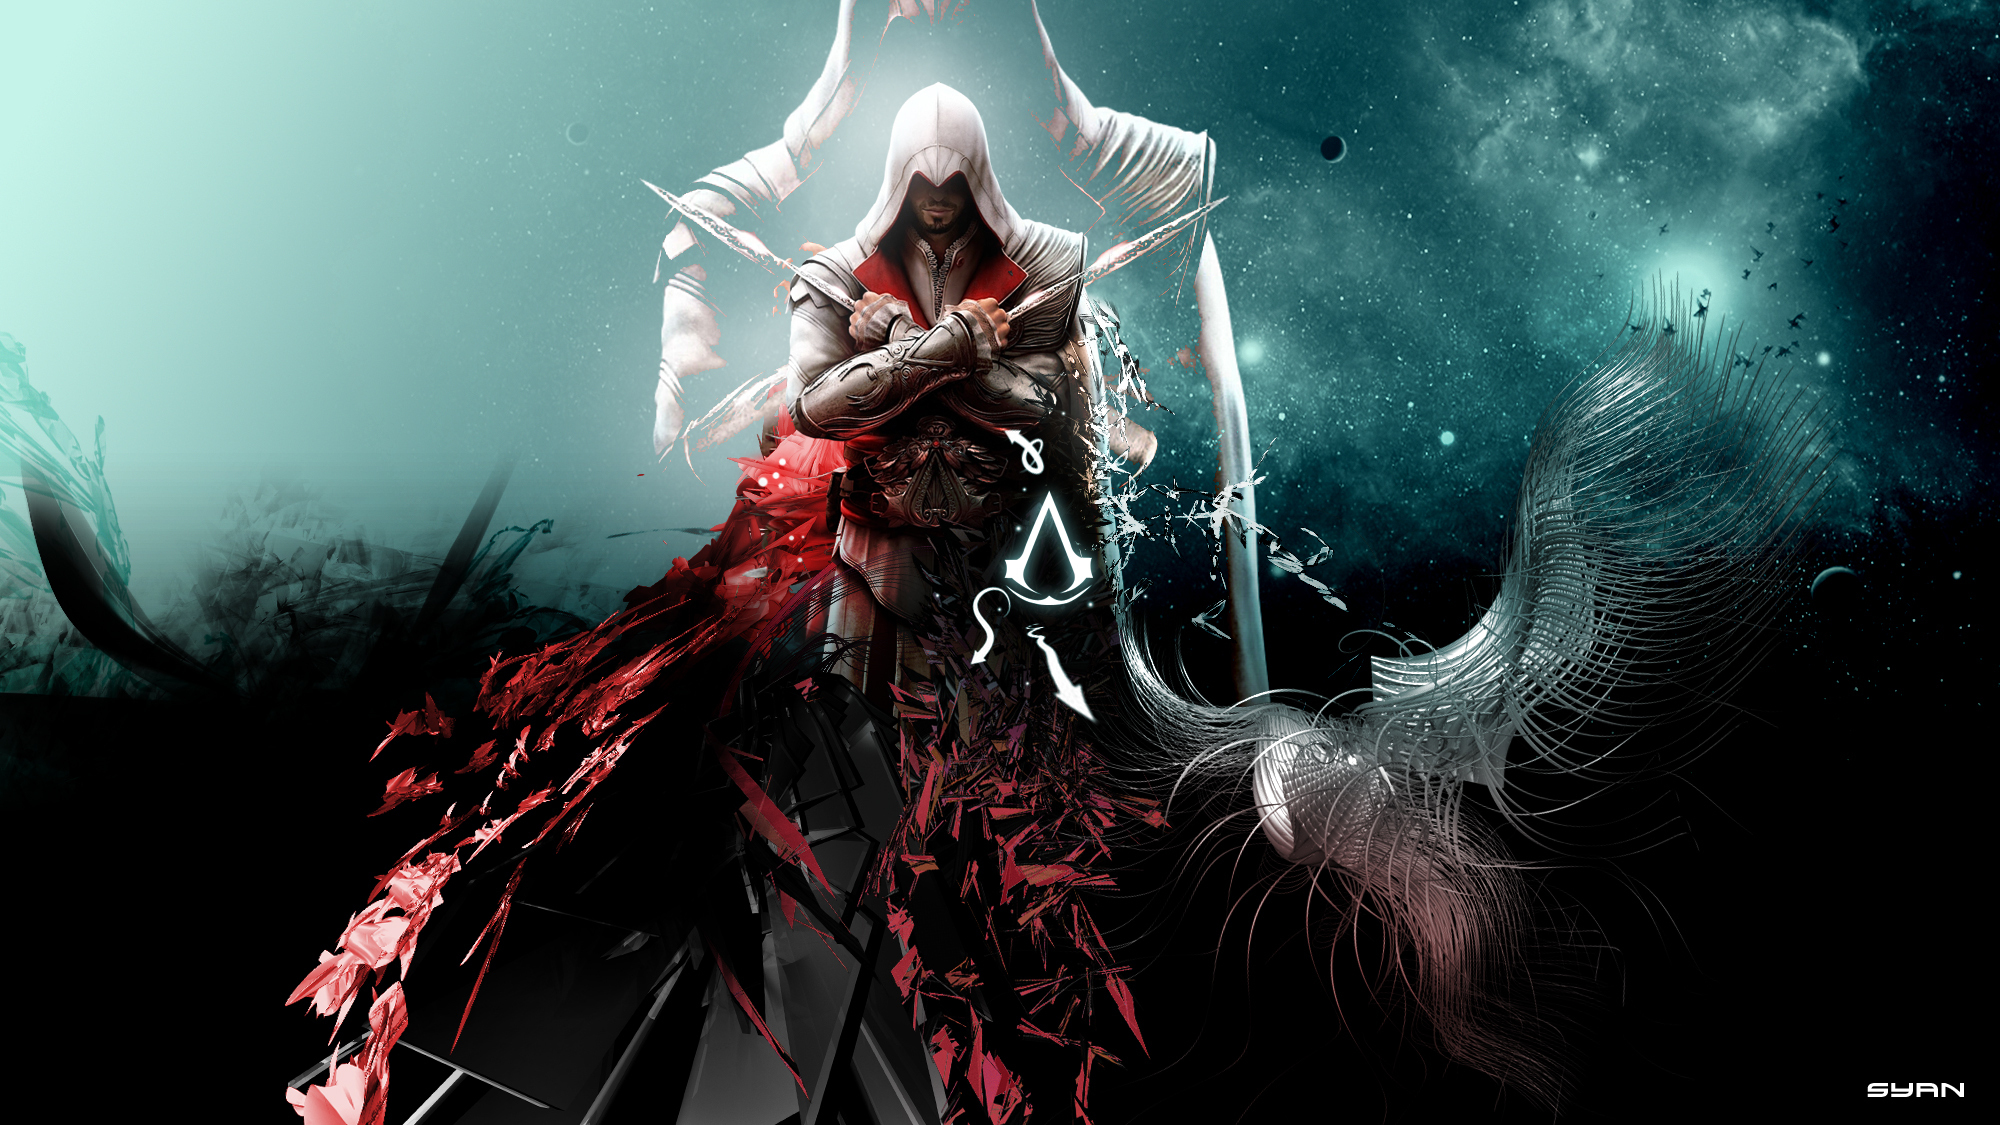 fondo de pantalla del credo asesino,cg artwork,juego de acción y aventura,oscuridad,ilustración,personaje de ficción